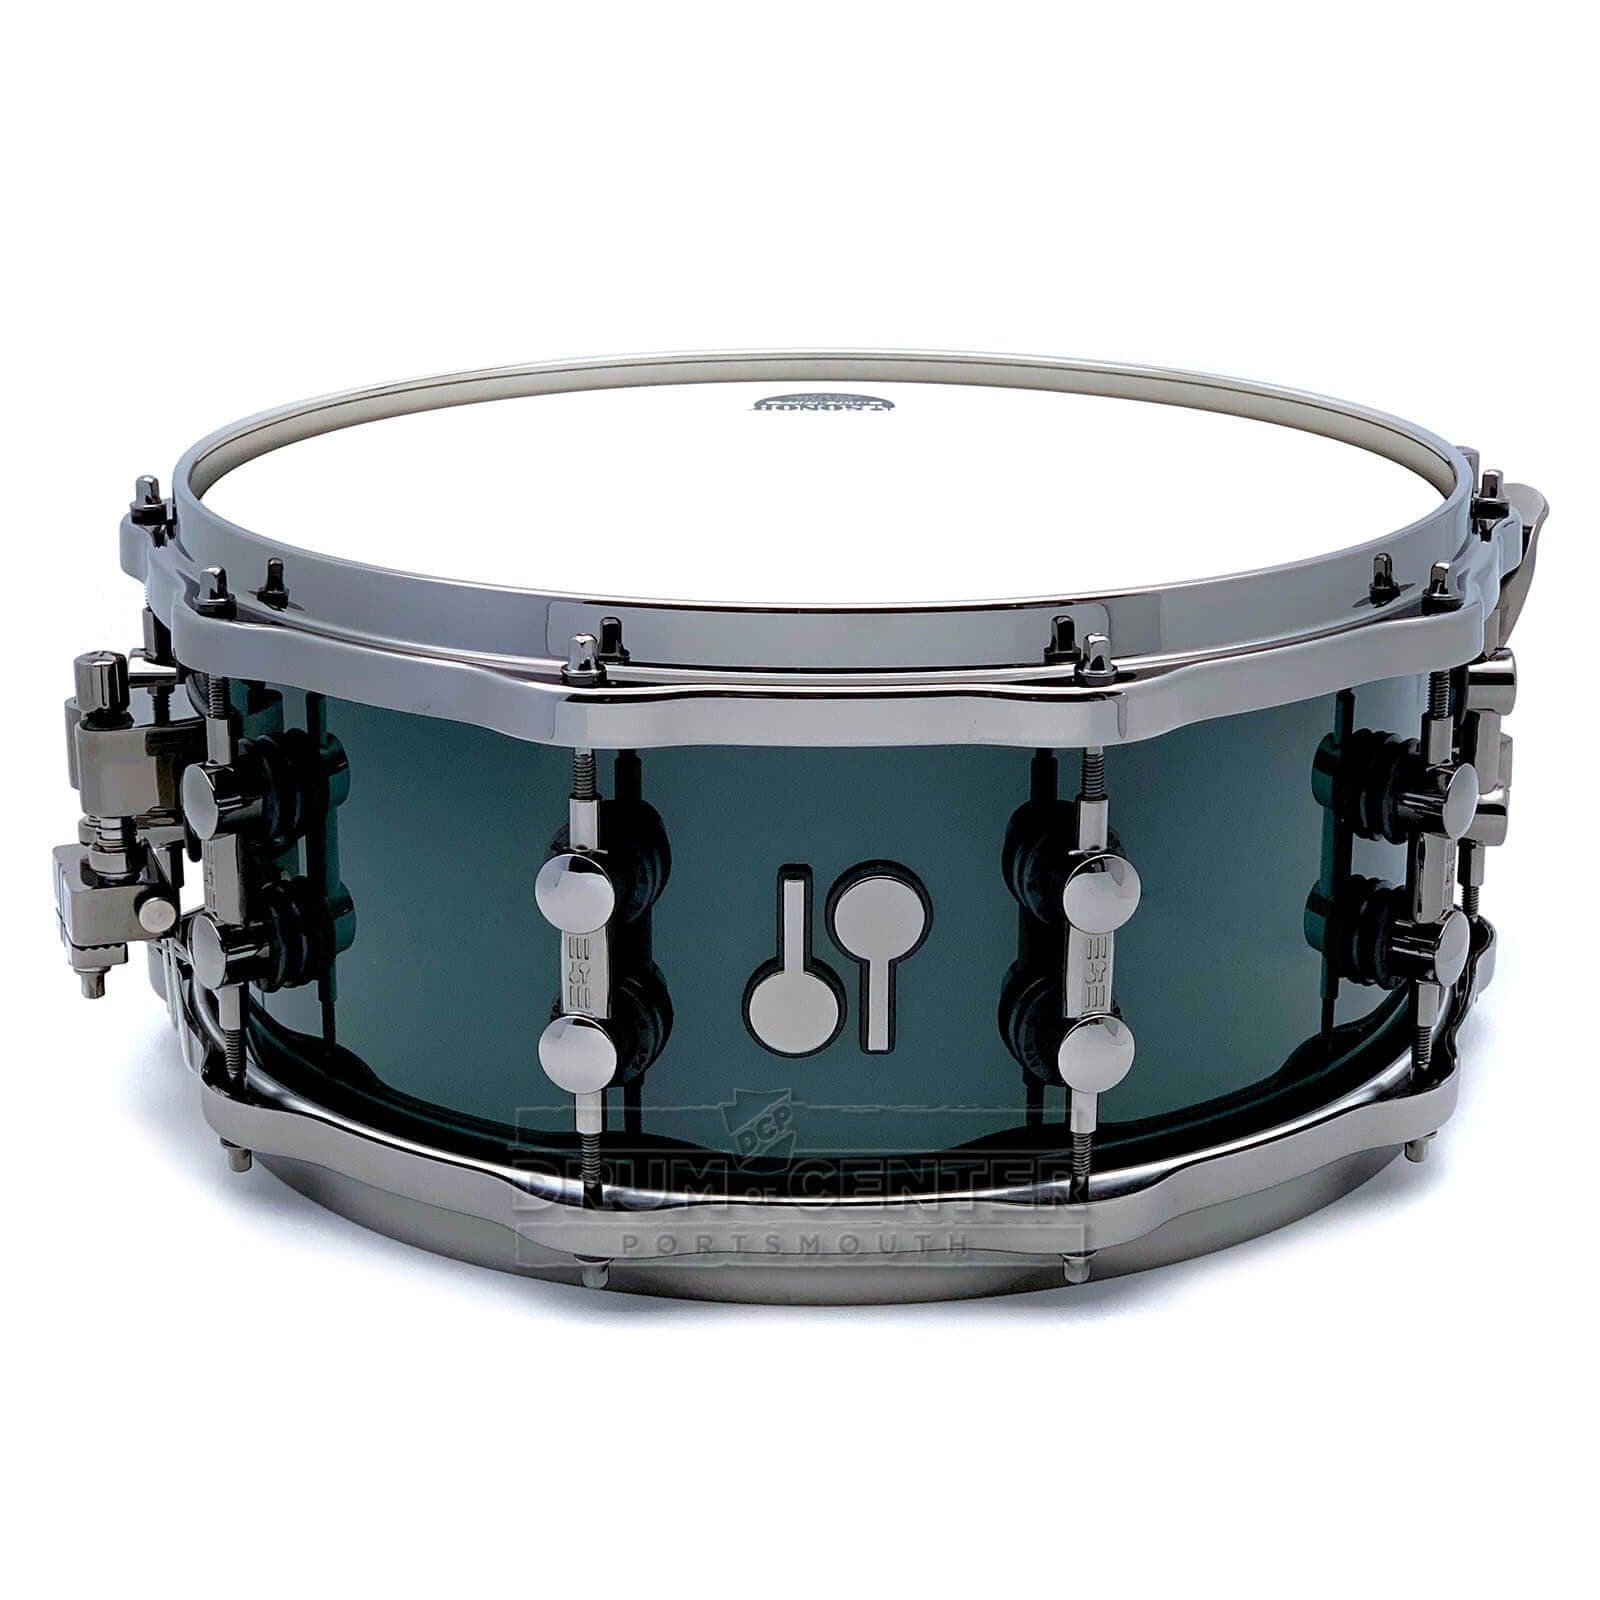 Sonor SQ2 Heavy Maple Snare Drum 14x6 Black Green w/Black Hardware